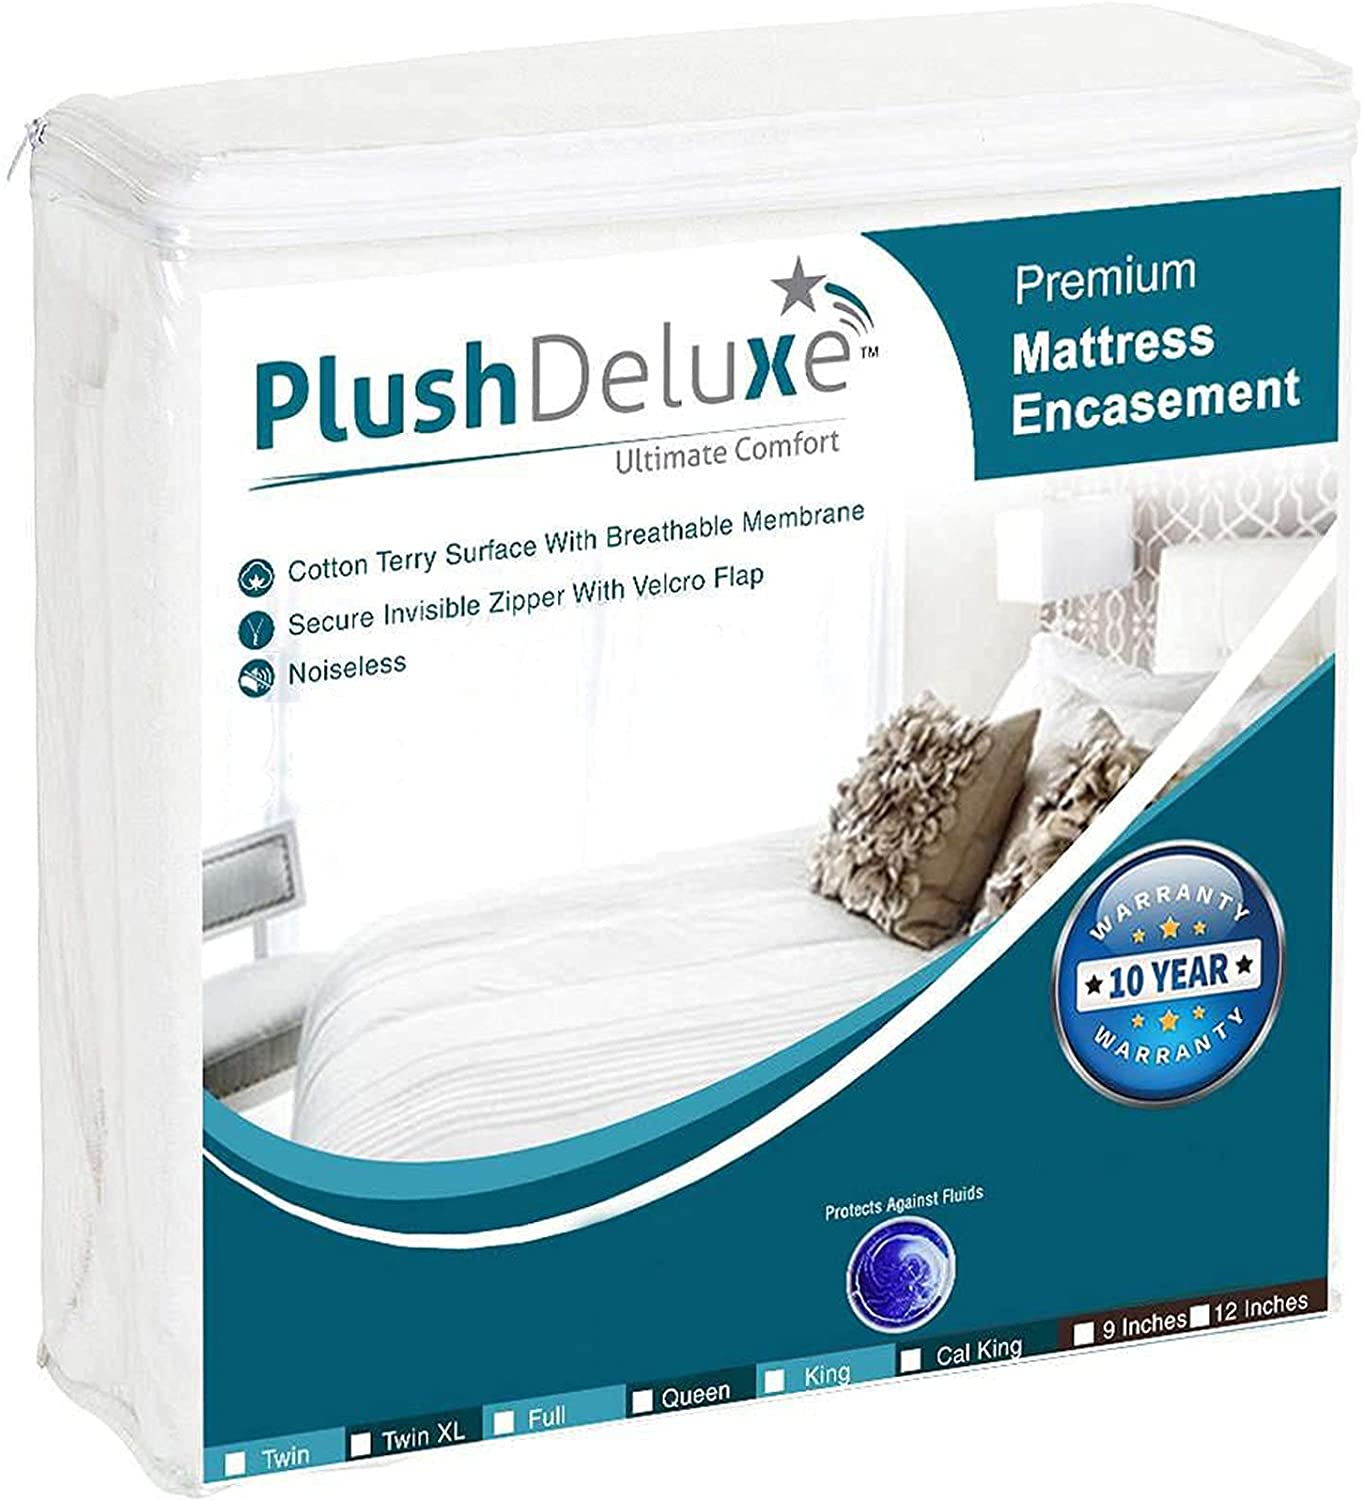 PlushDeluxe Breathable Noiseless Mattress Cover